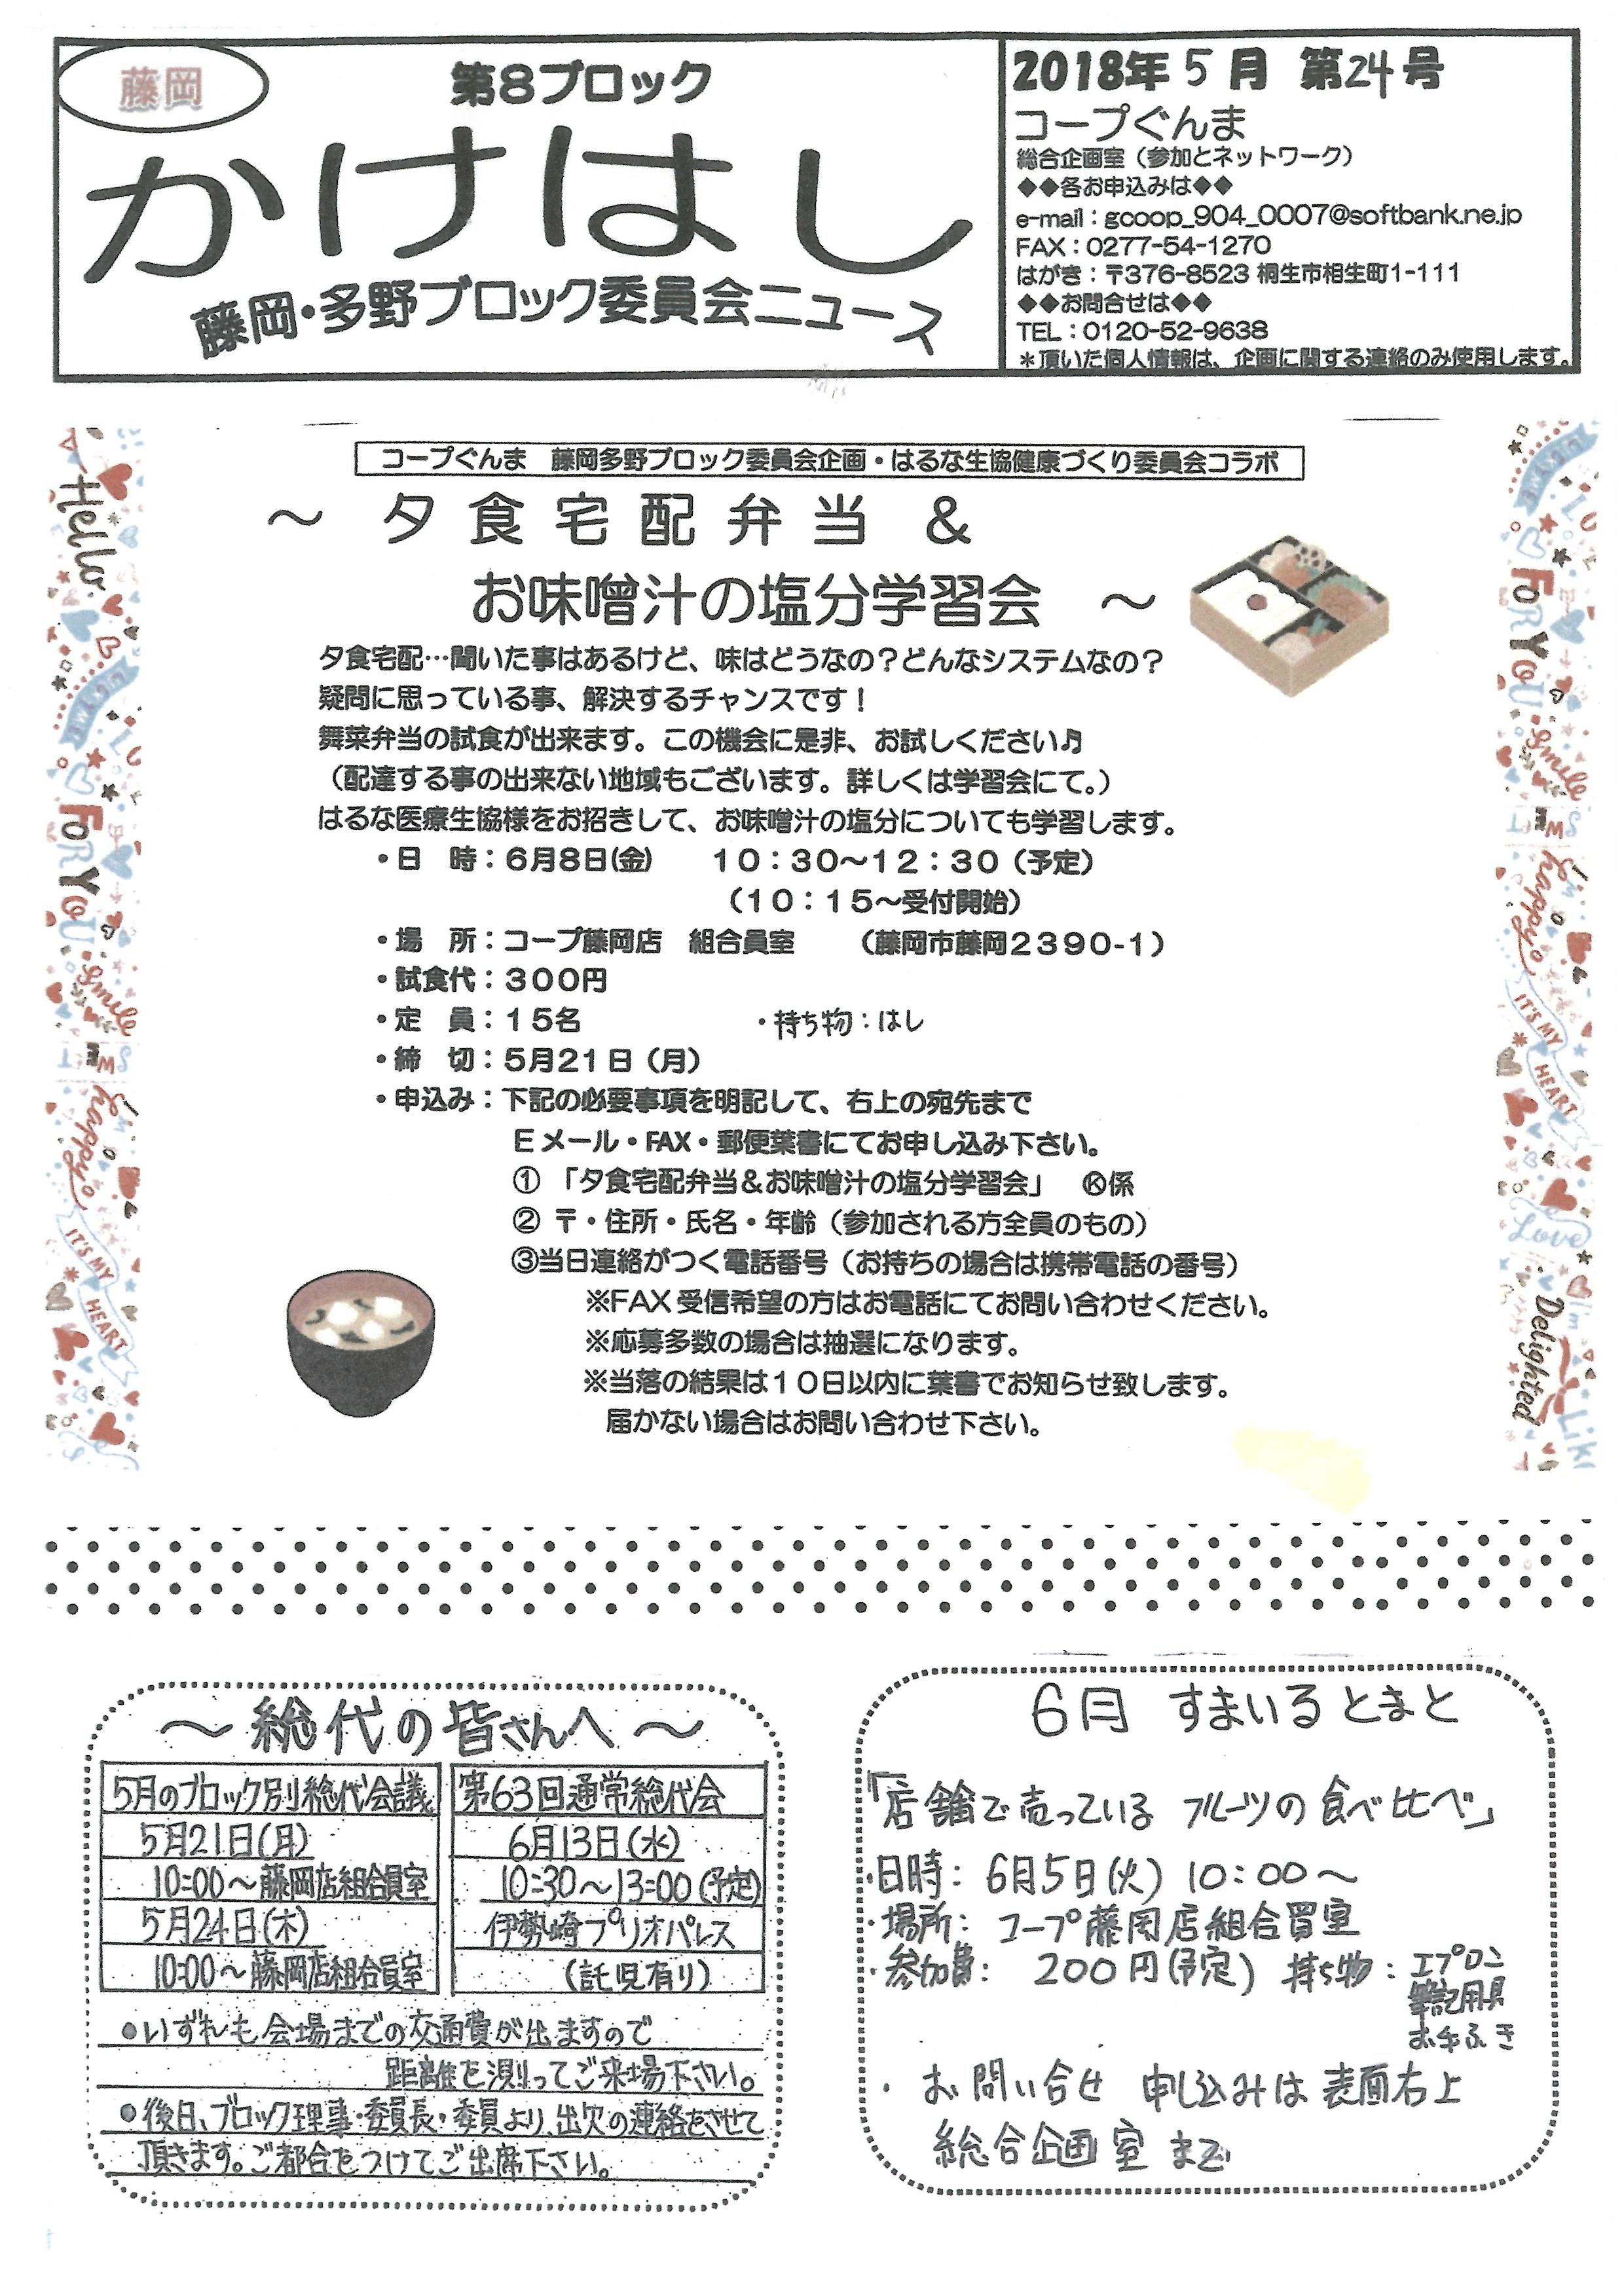 https://gunma.coopnet.or.jp/event/ev/ev_info/img/1805_b8_news_01.jpg